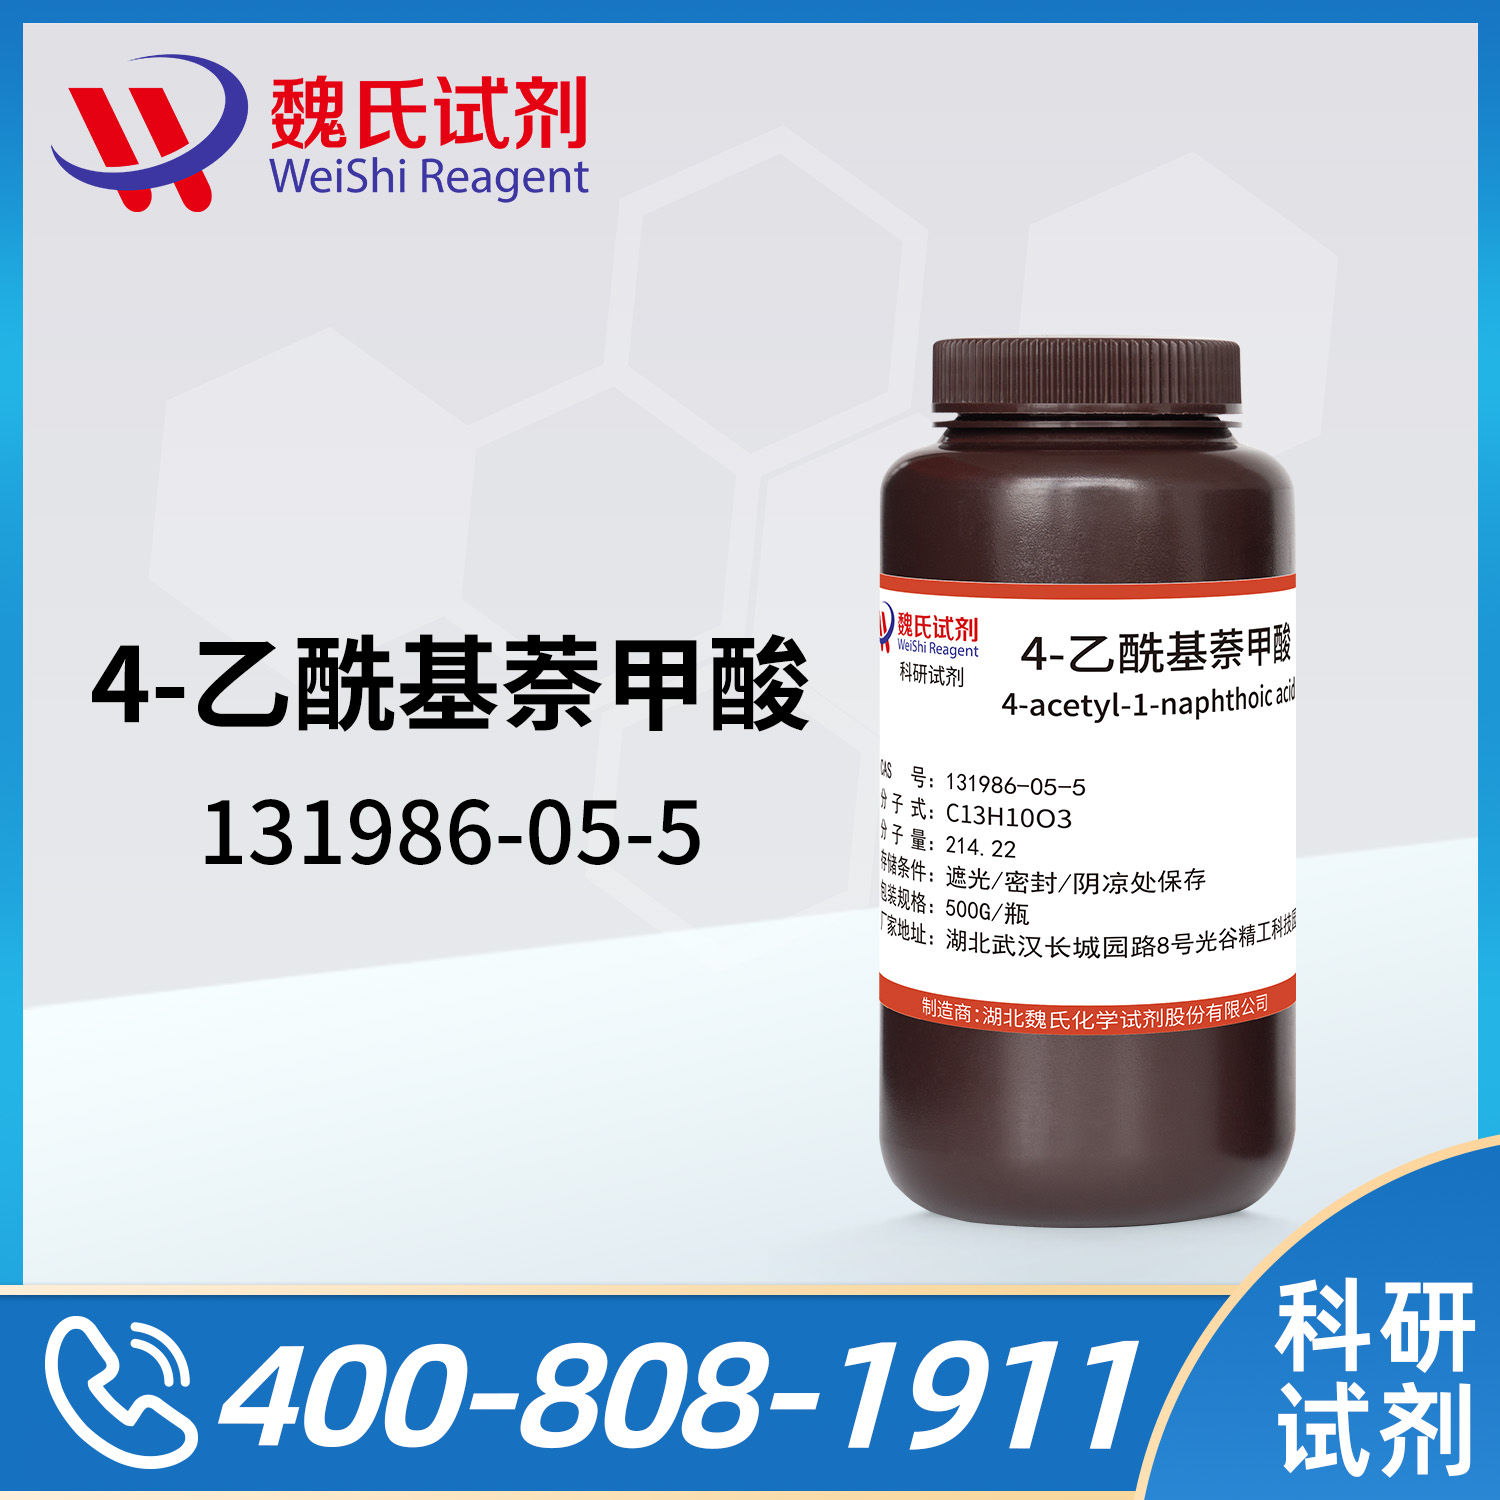 4-acetyl-1-naphthoic acid